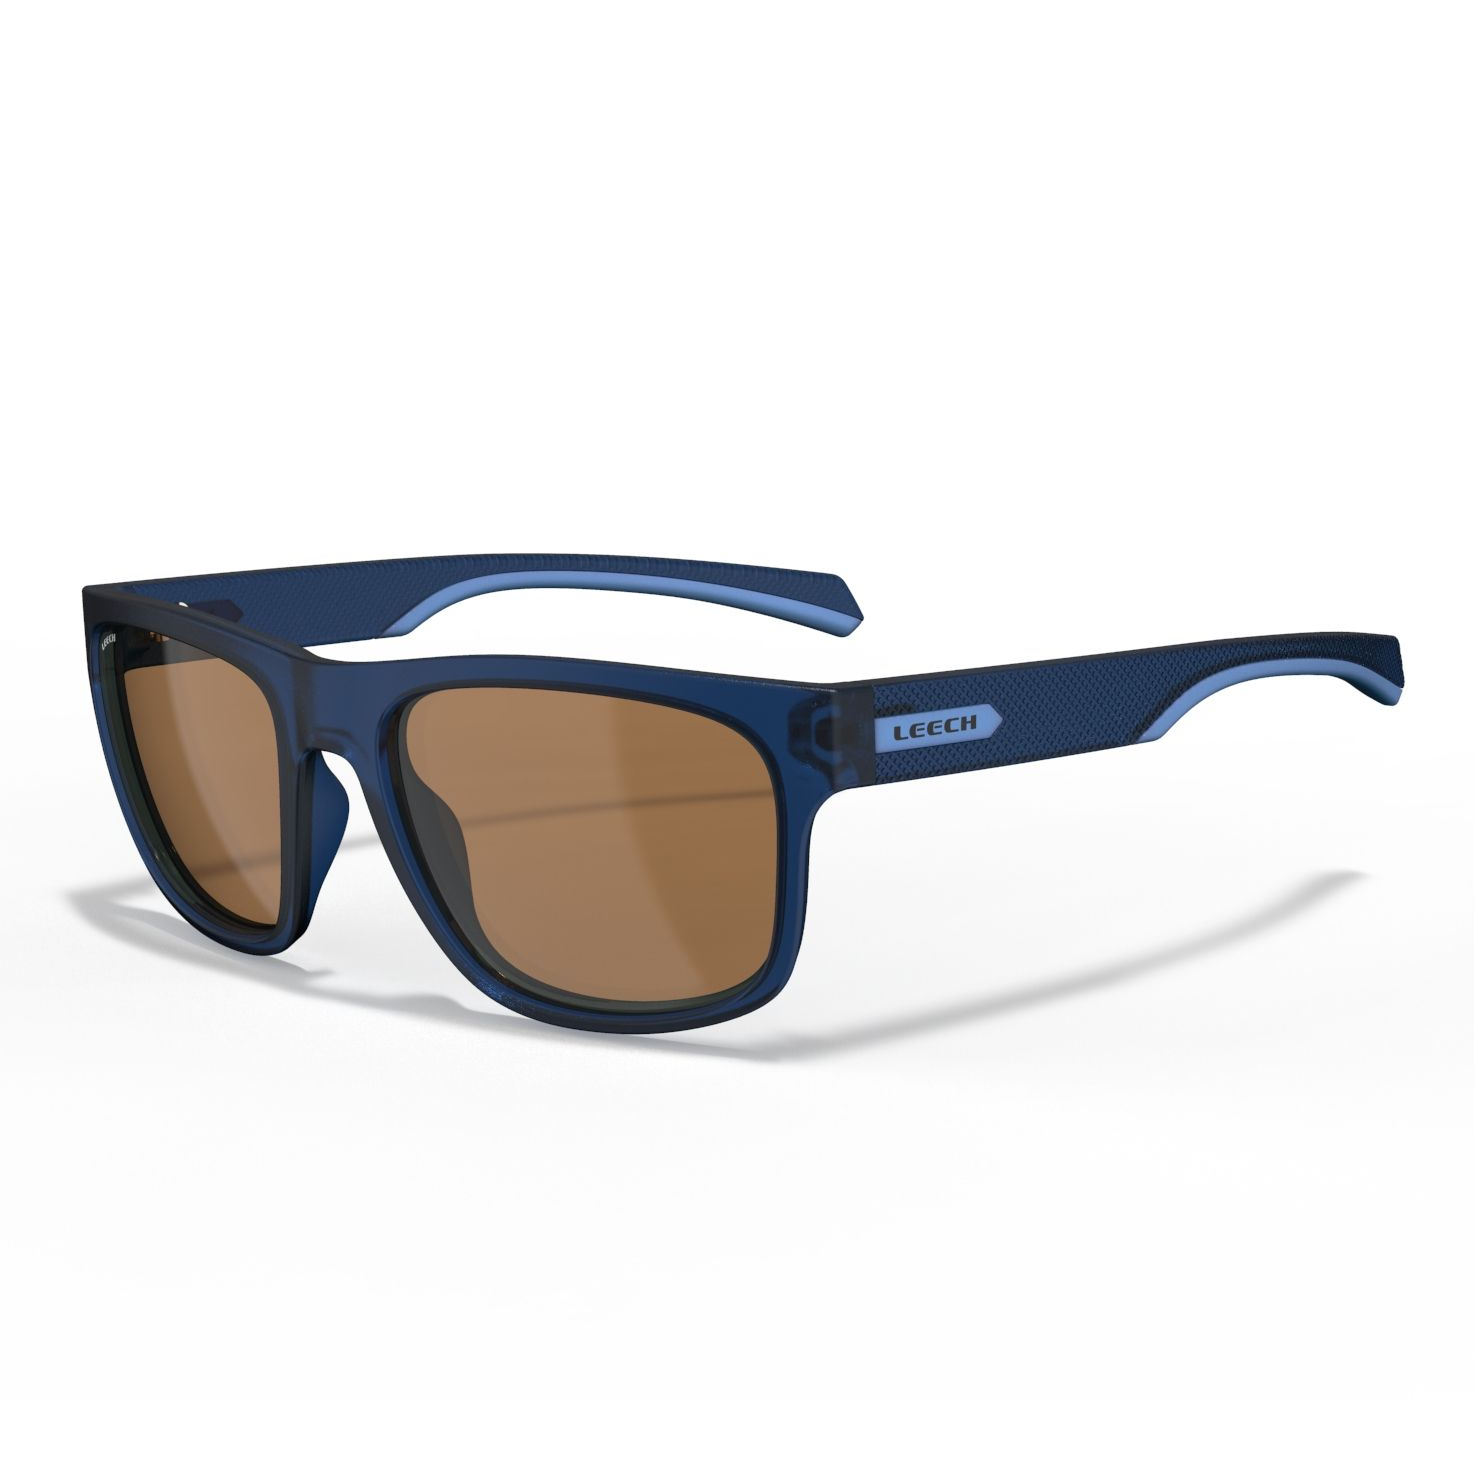 Leech brýle Reflex blue-LS2116A